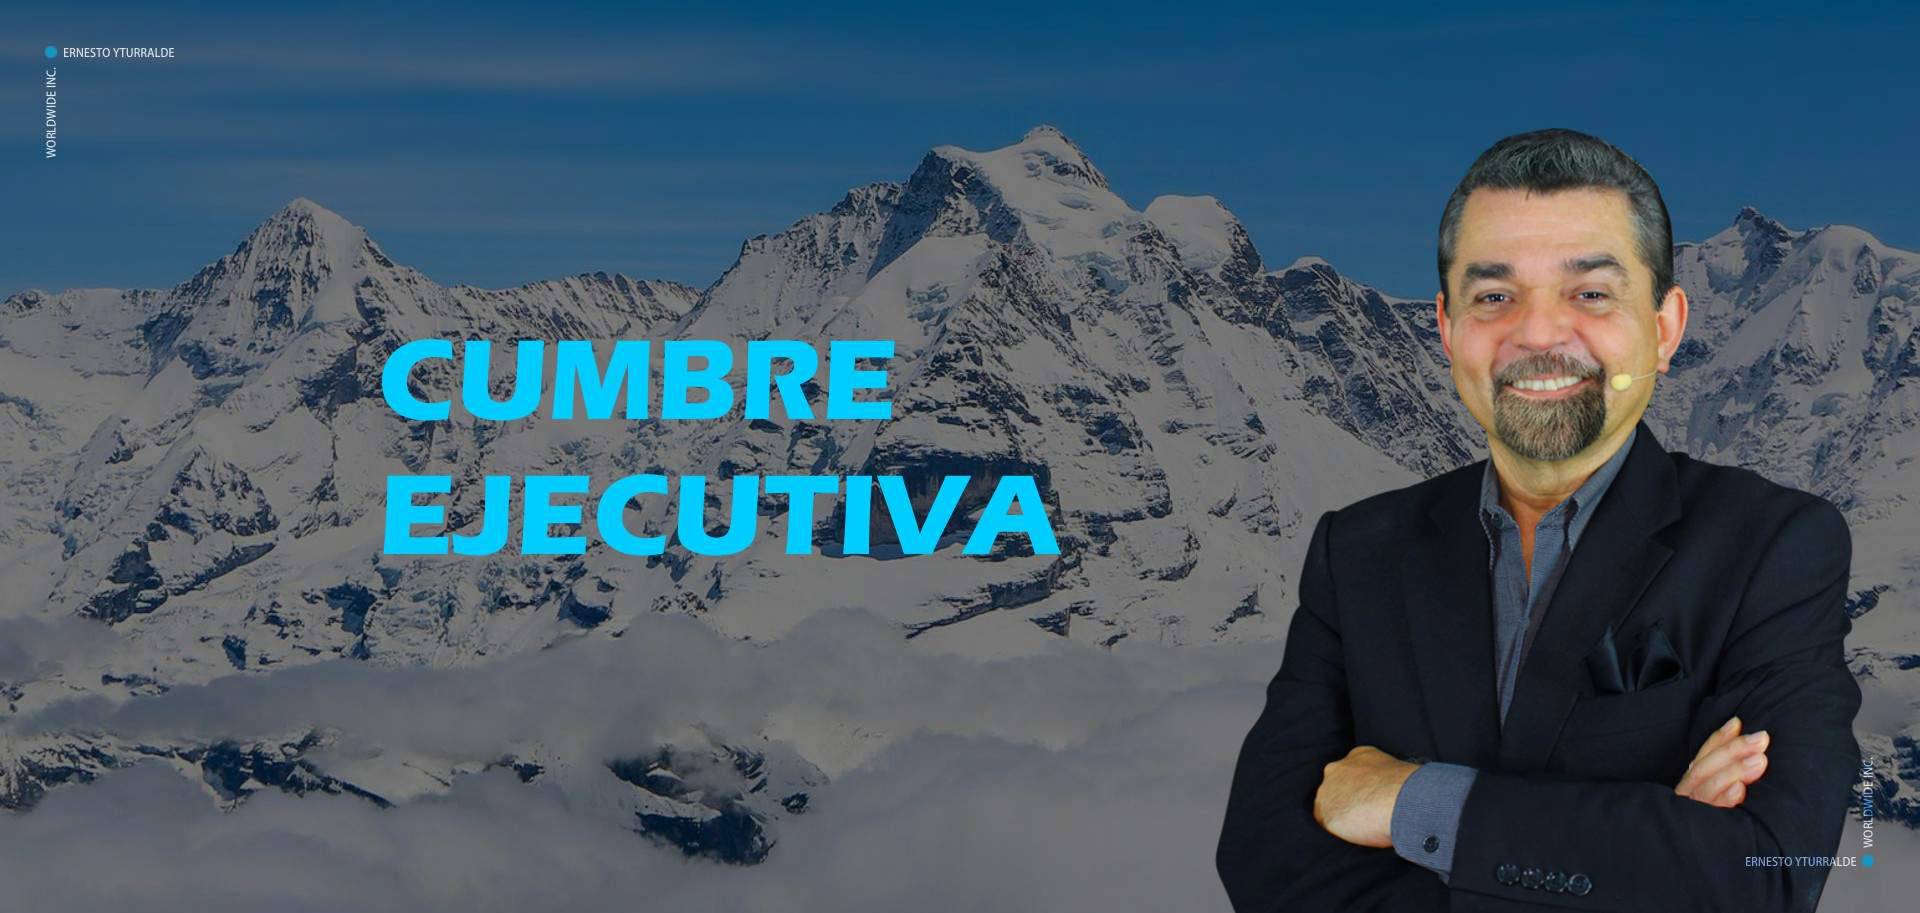 Cumbre Ejecutiva - Ernesto Yturralde Worldwide Inc.